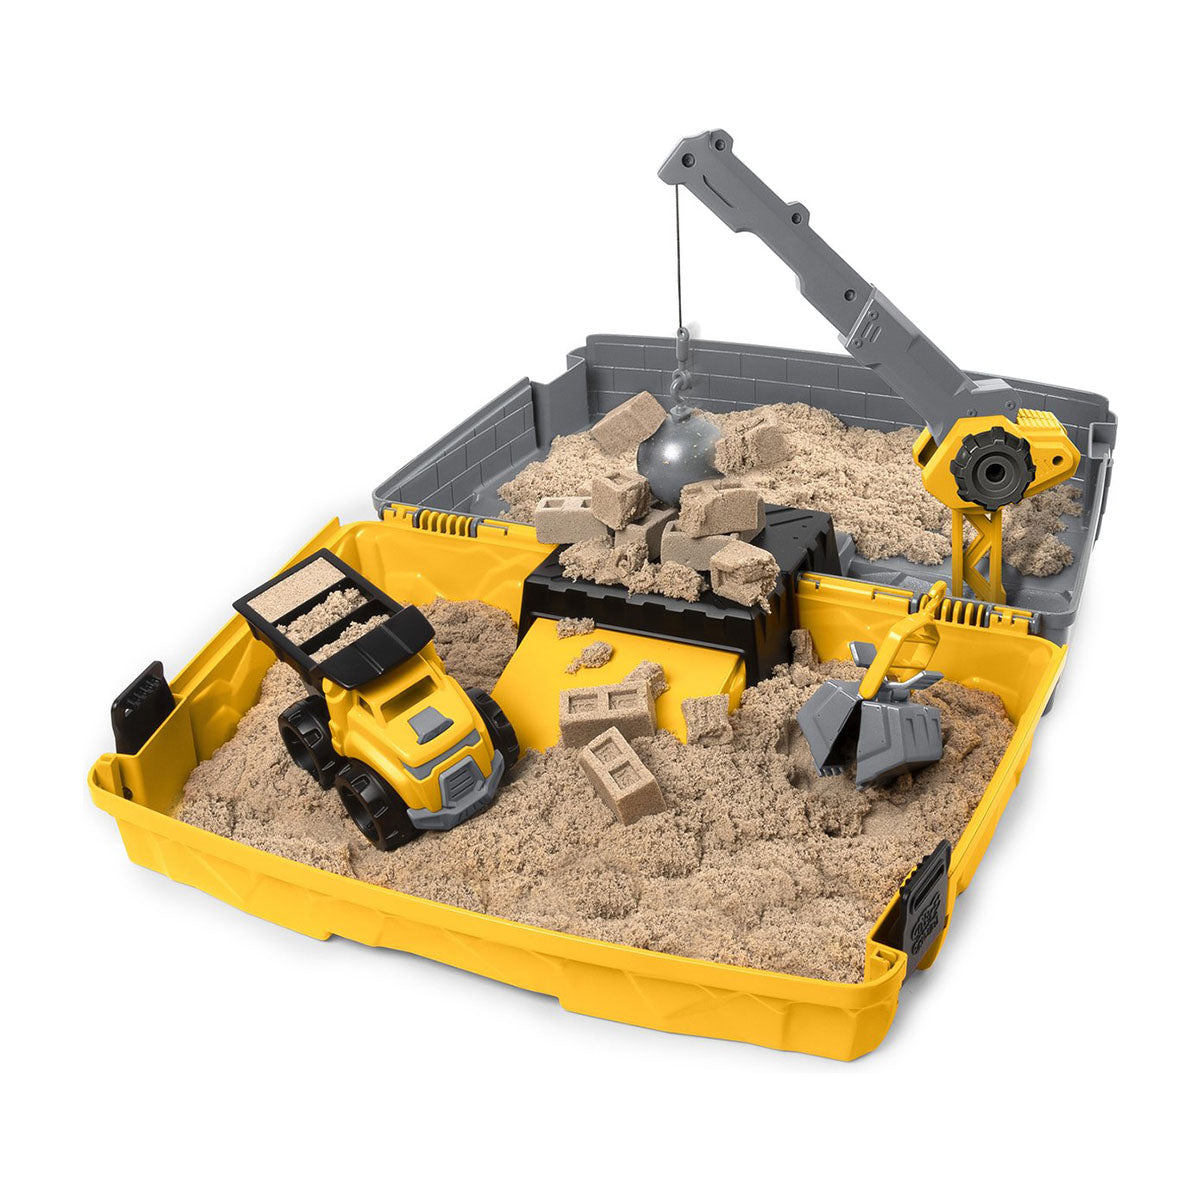 Deze opvouwbare Kinetic Sand construcrion bouwplaats 907 gram met een speciaal bouwplaatsthema bevat alles wat je nodig hebt om je eigen bouwplaats te maken. Deze set bevat het magische Kinetic Sand, een kiepwagen, een kraan die echt werkt, een sloopkogel en een emmer. VanZus